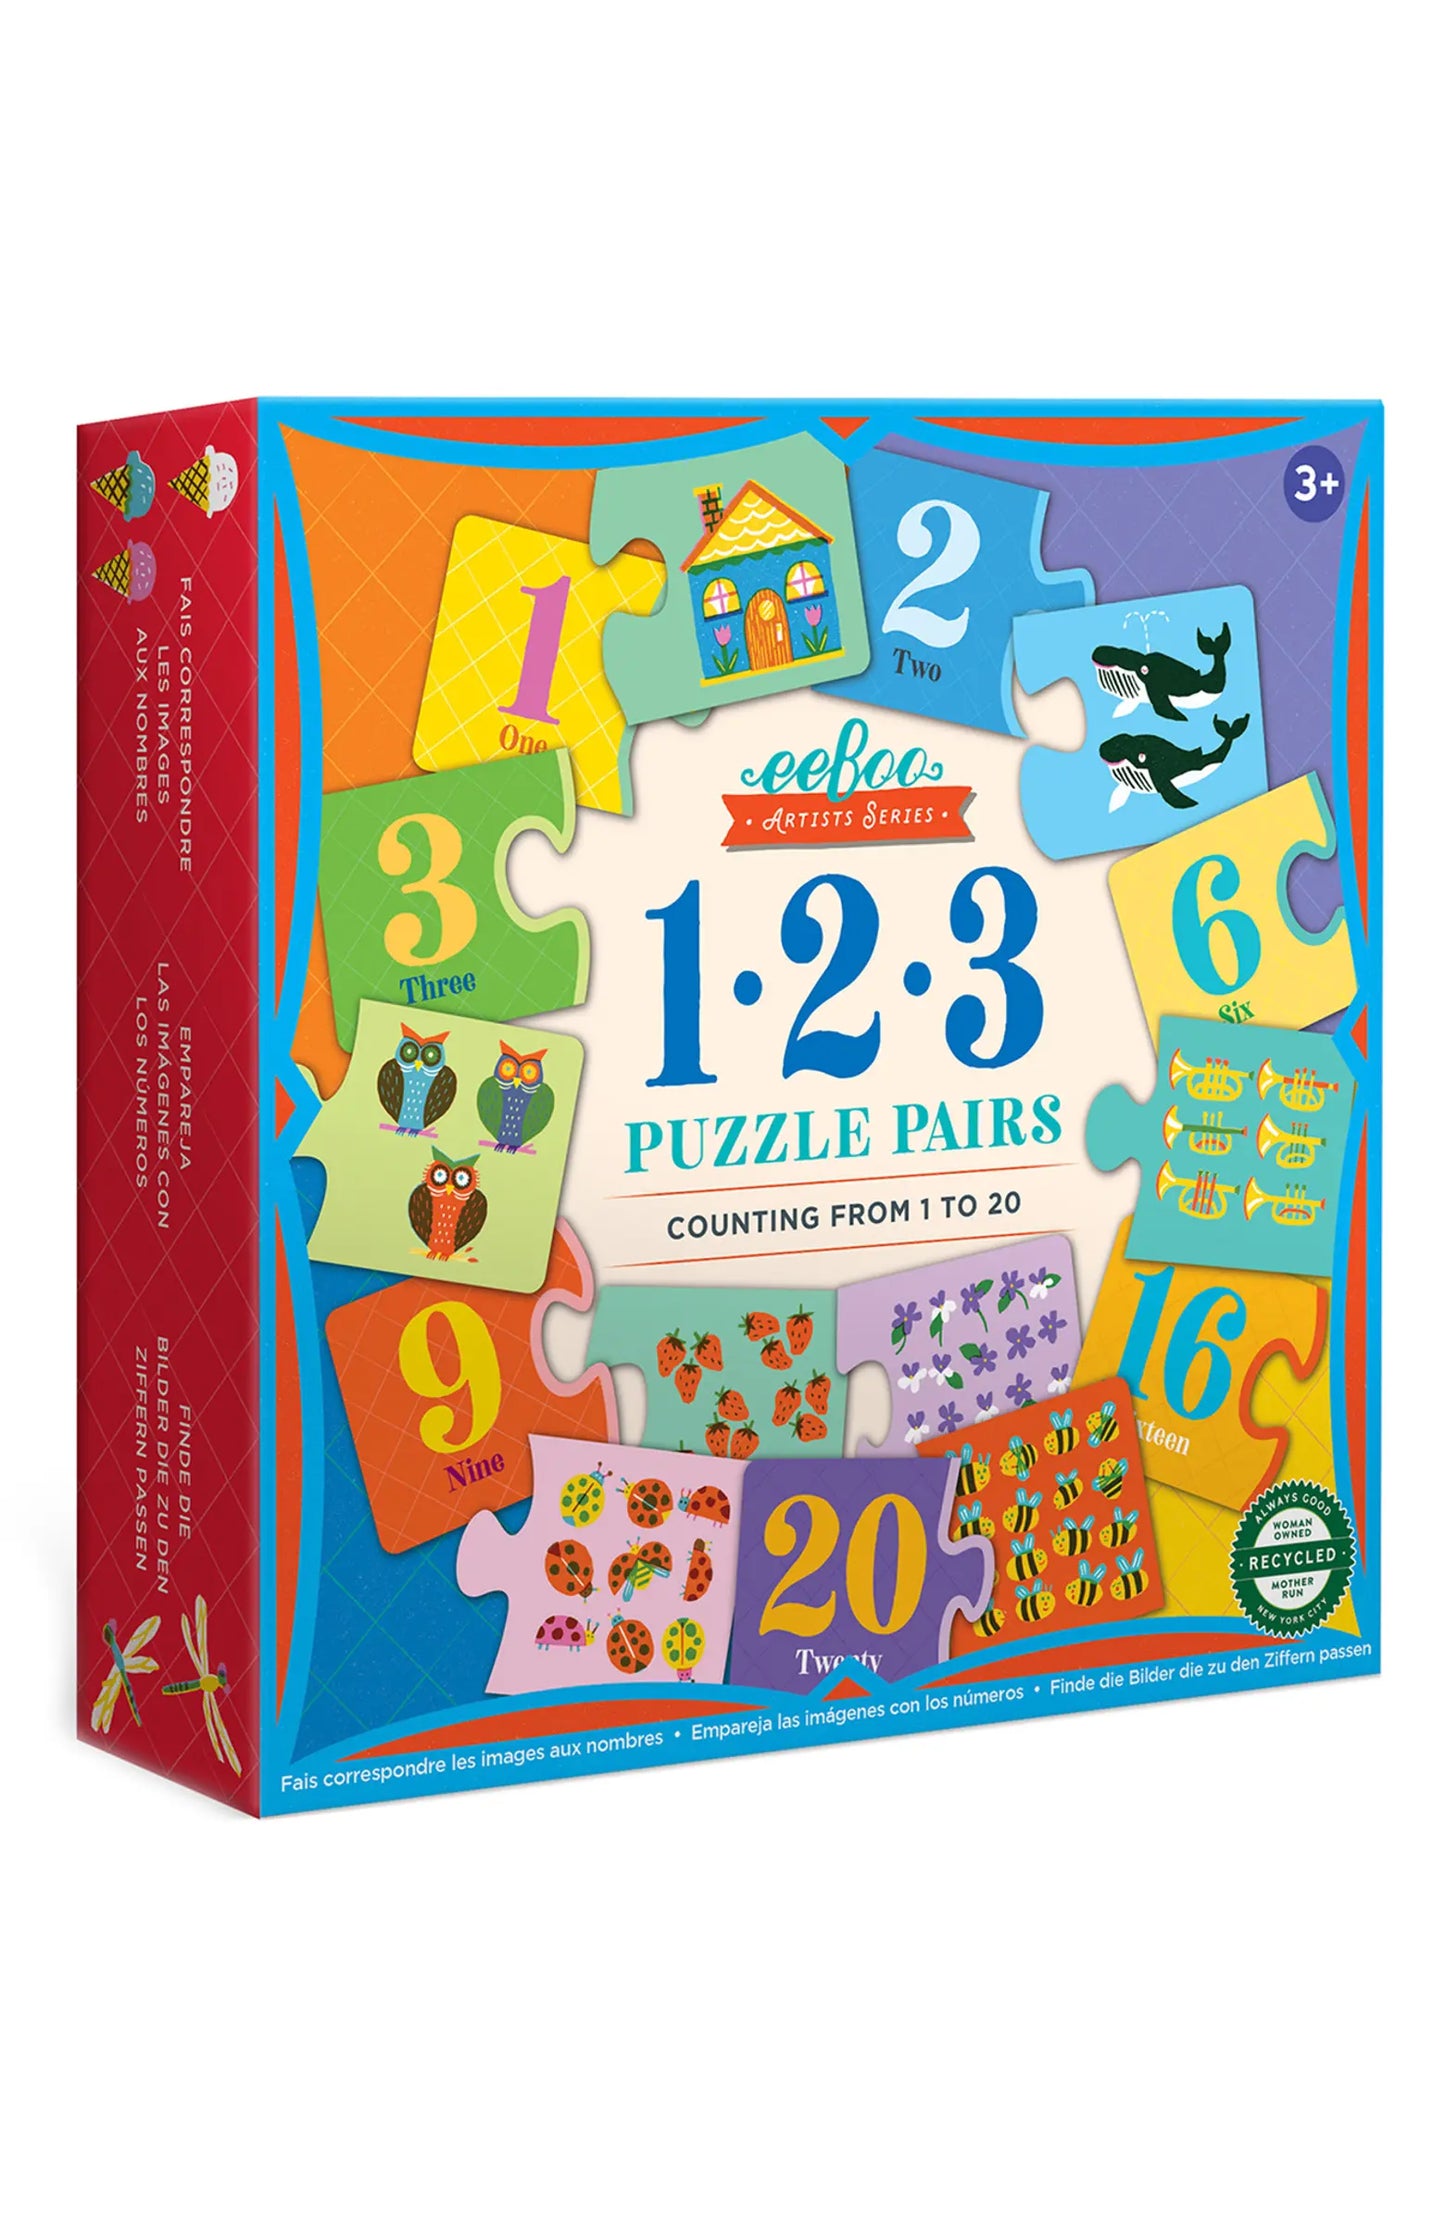 1 2 3 Puzzle Pairs